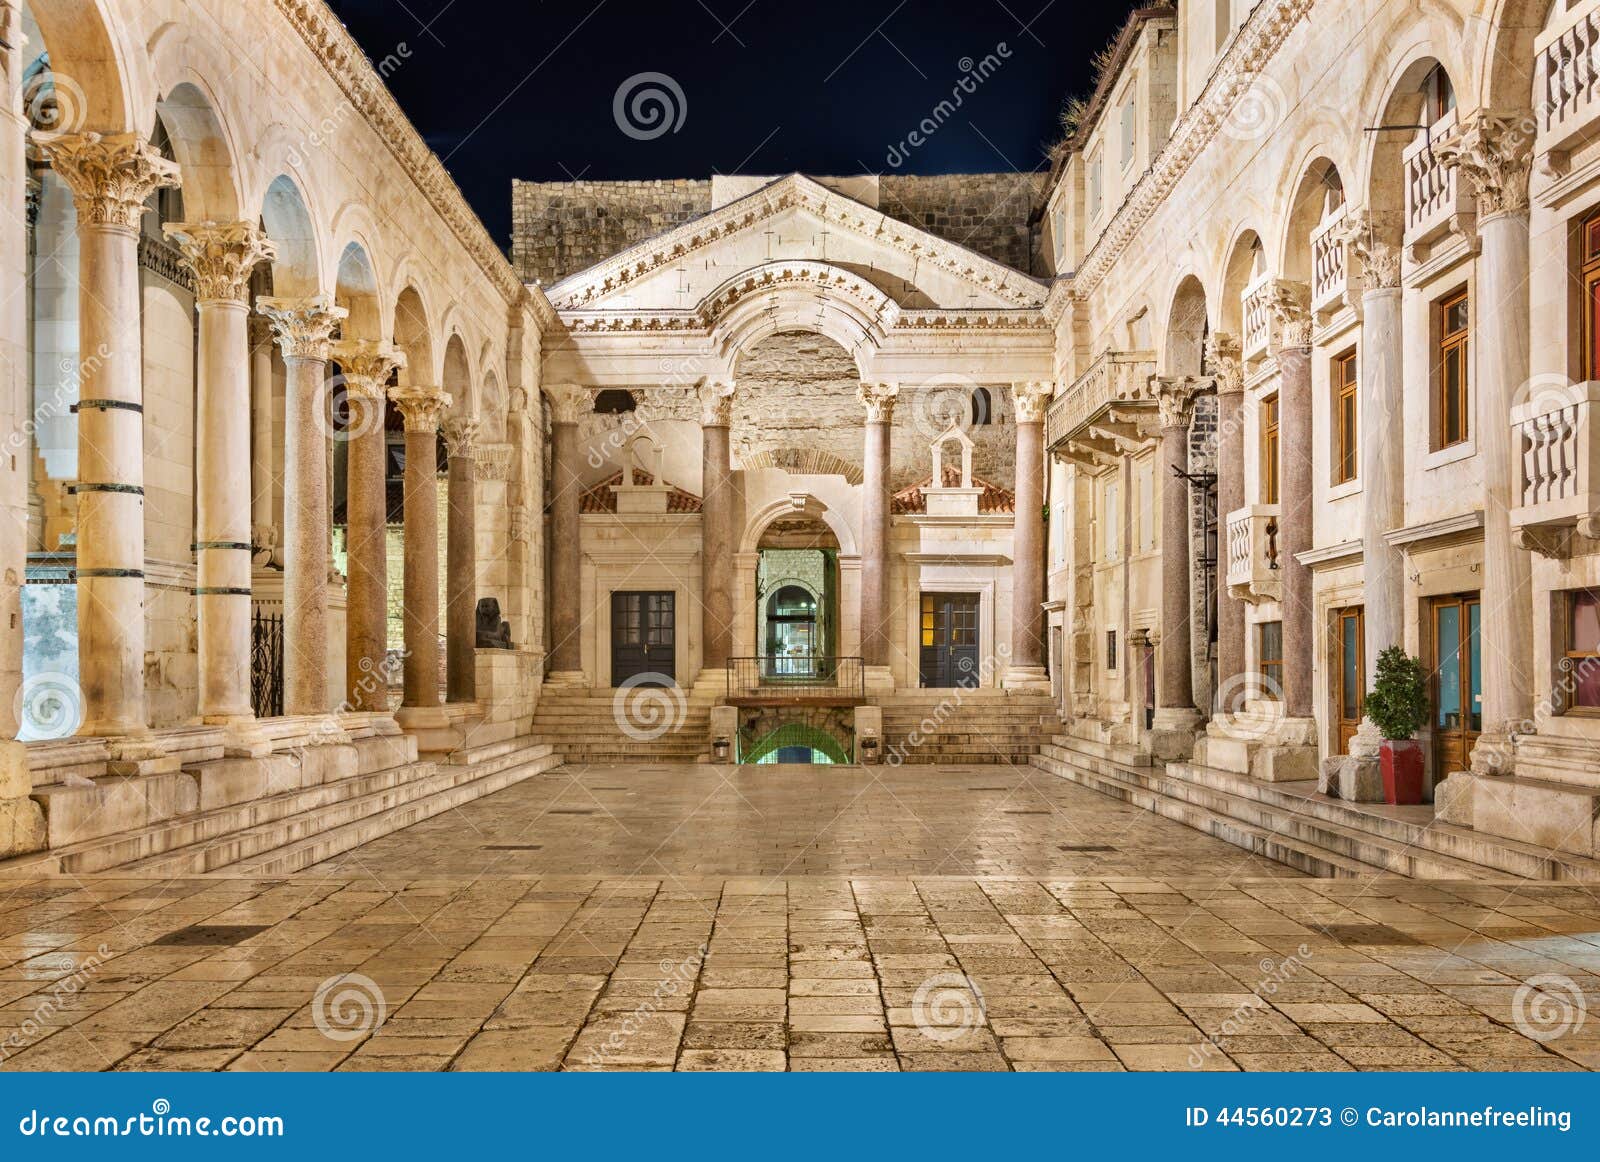 diocletian palace at night